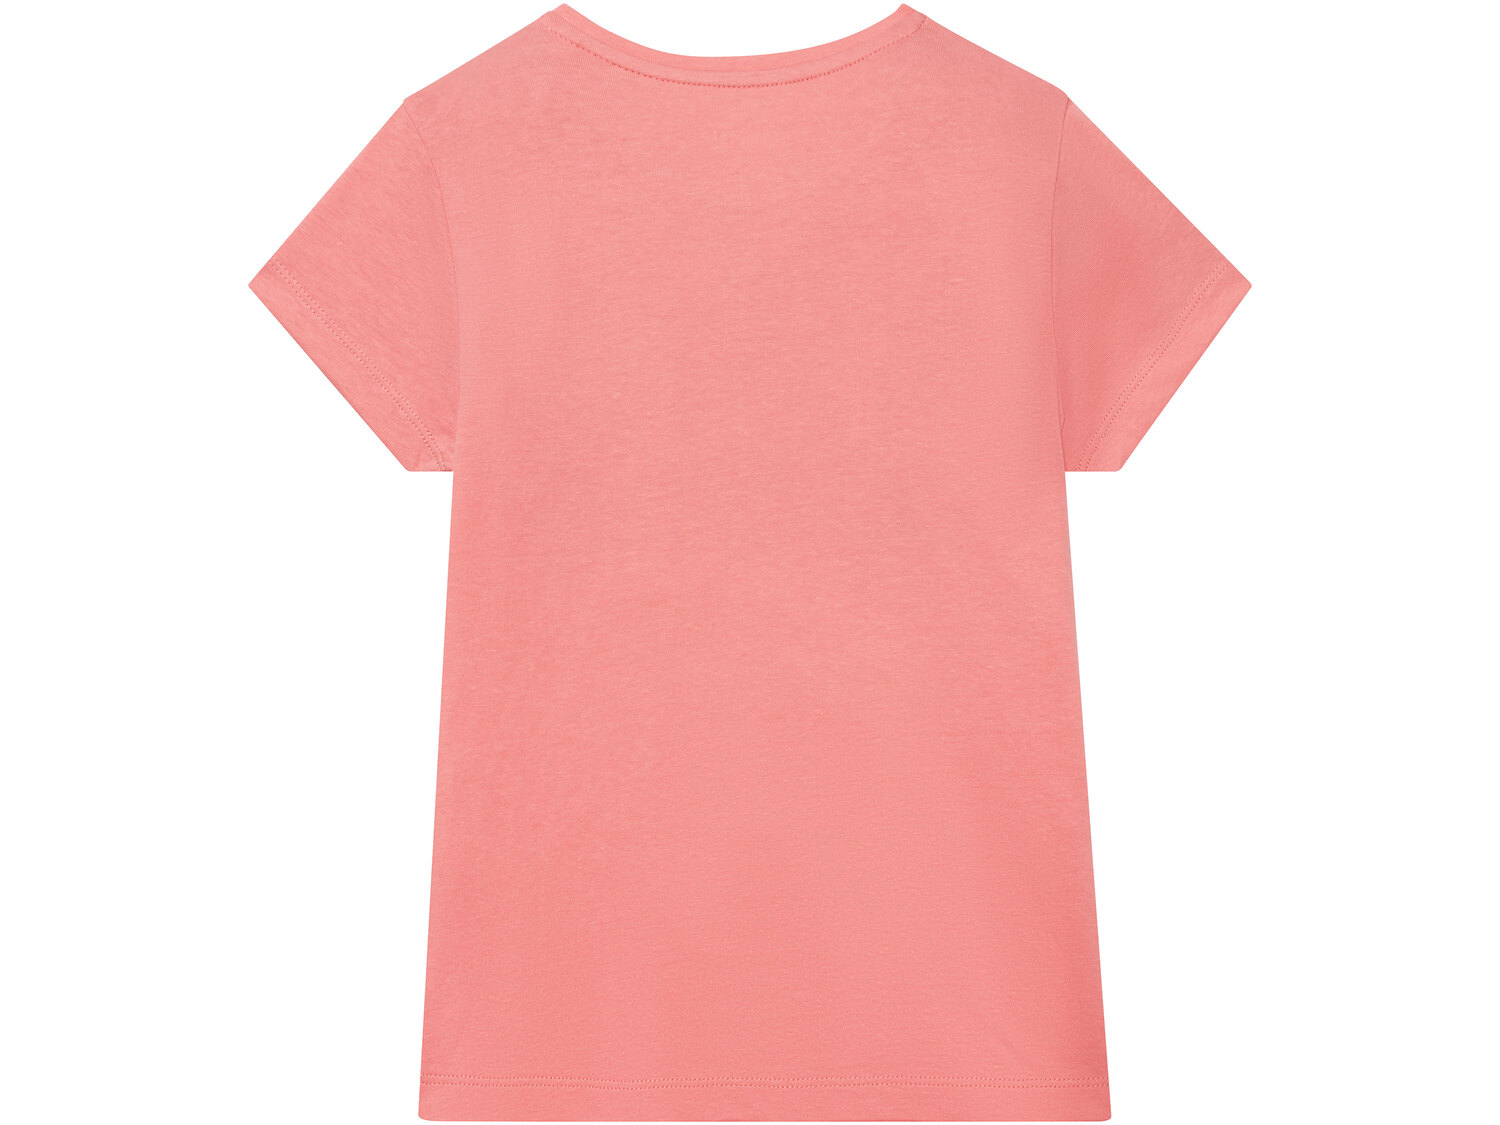 T-shirt dziewczęcy z bawełny , cena 12,99 PLN 
- 100% bawełny
- rozmiary: 122-164
- ...